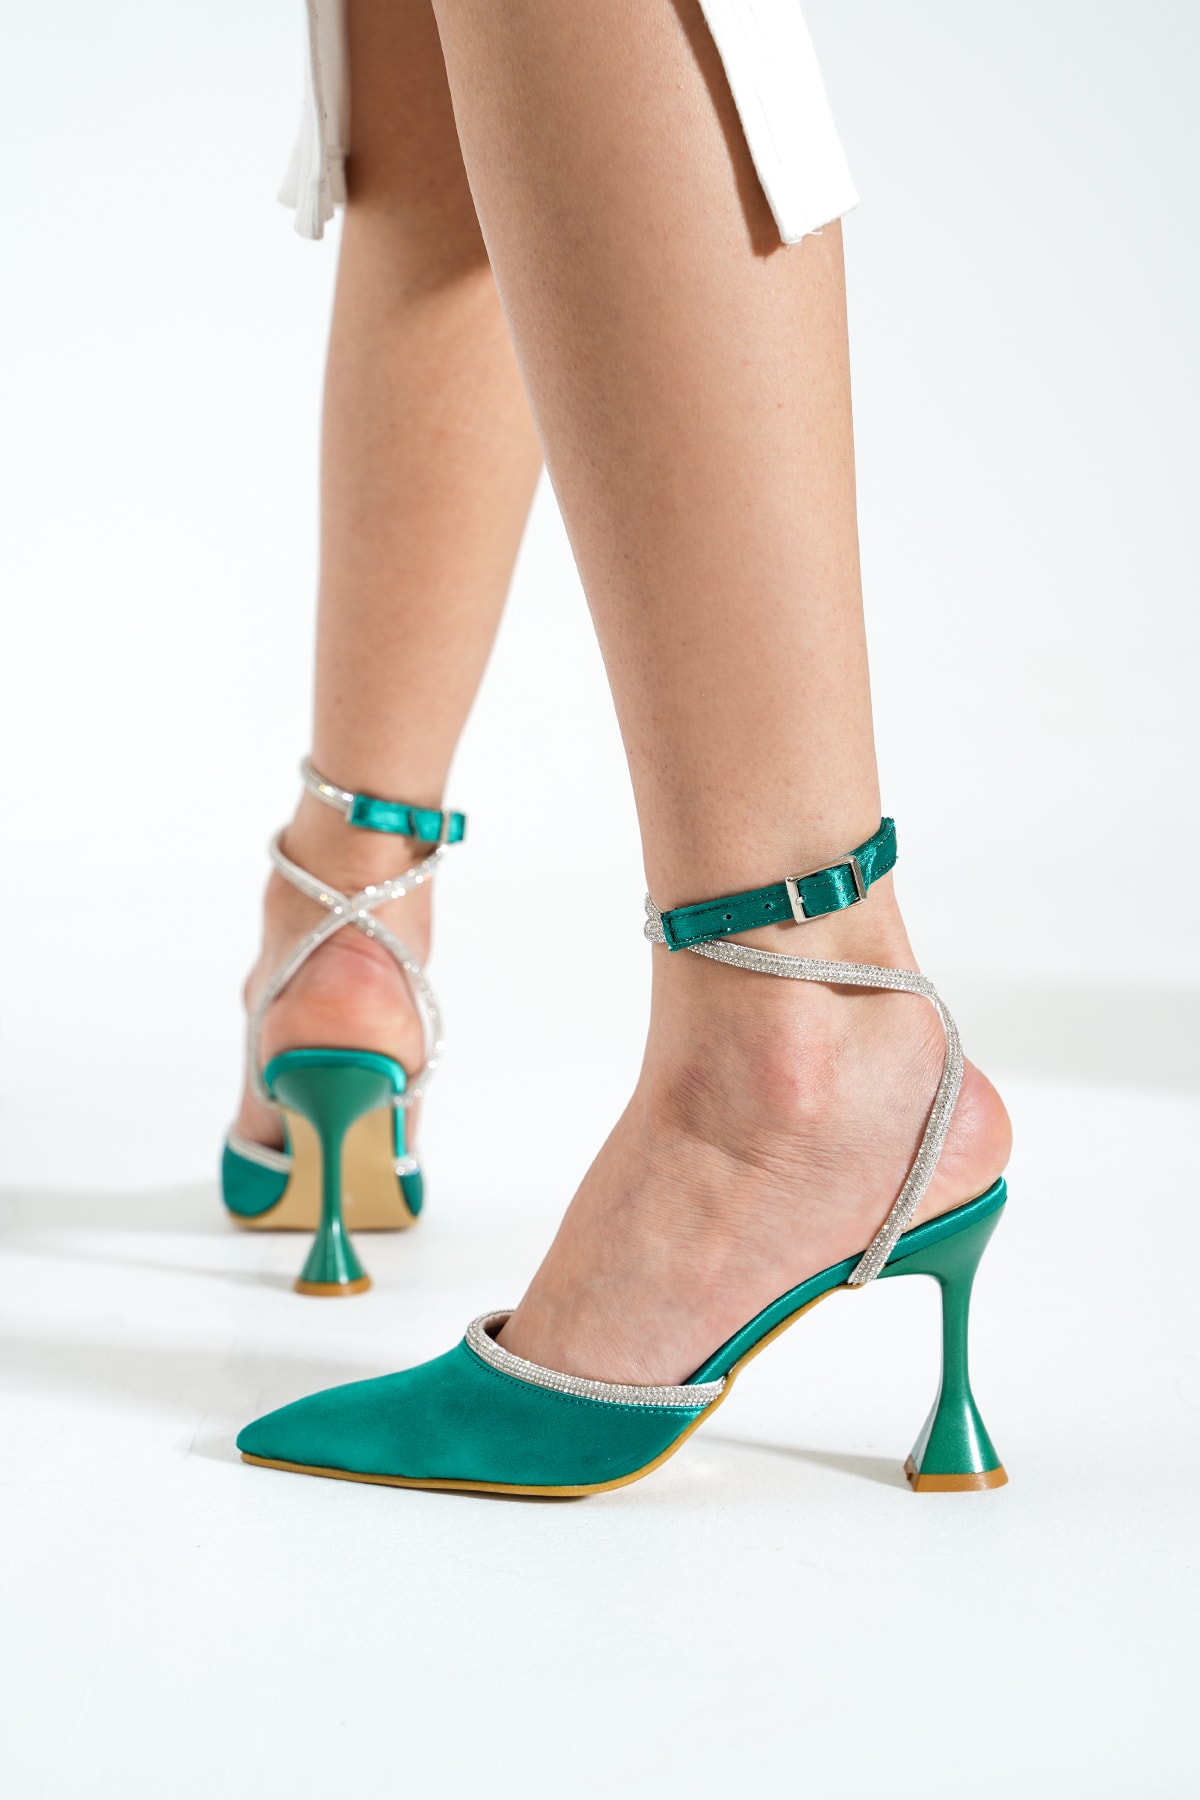 DUXAL SHOES Yeşil Saten Bilekten Bağlamalı Topuklu Kadın Ayakkabı